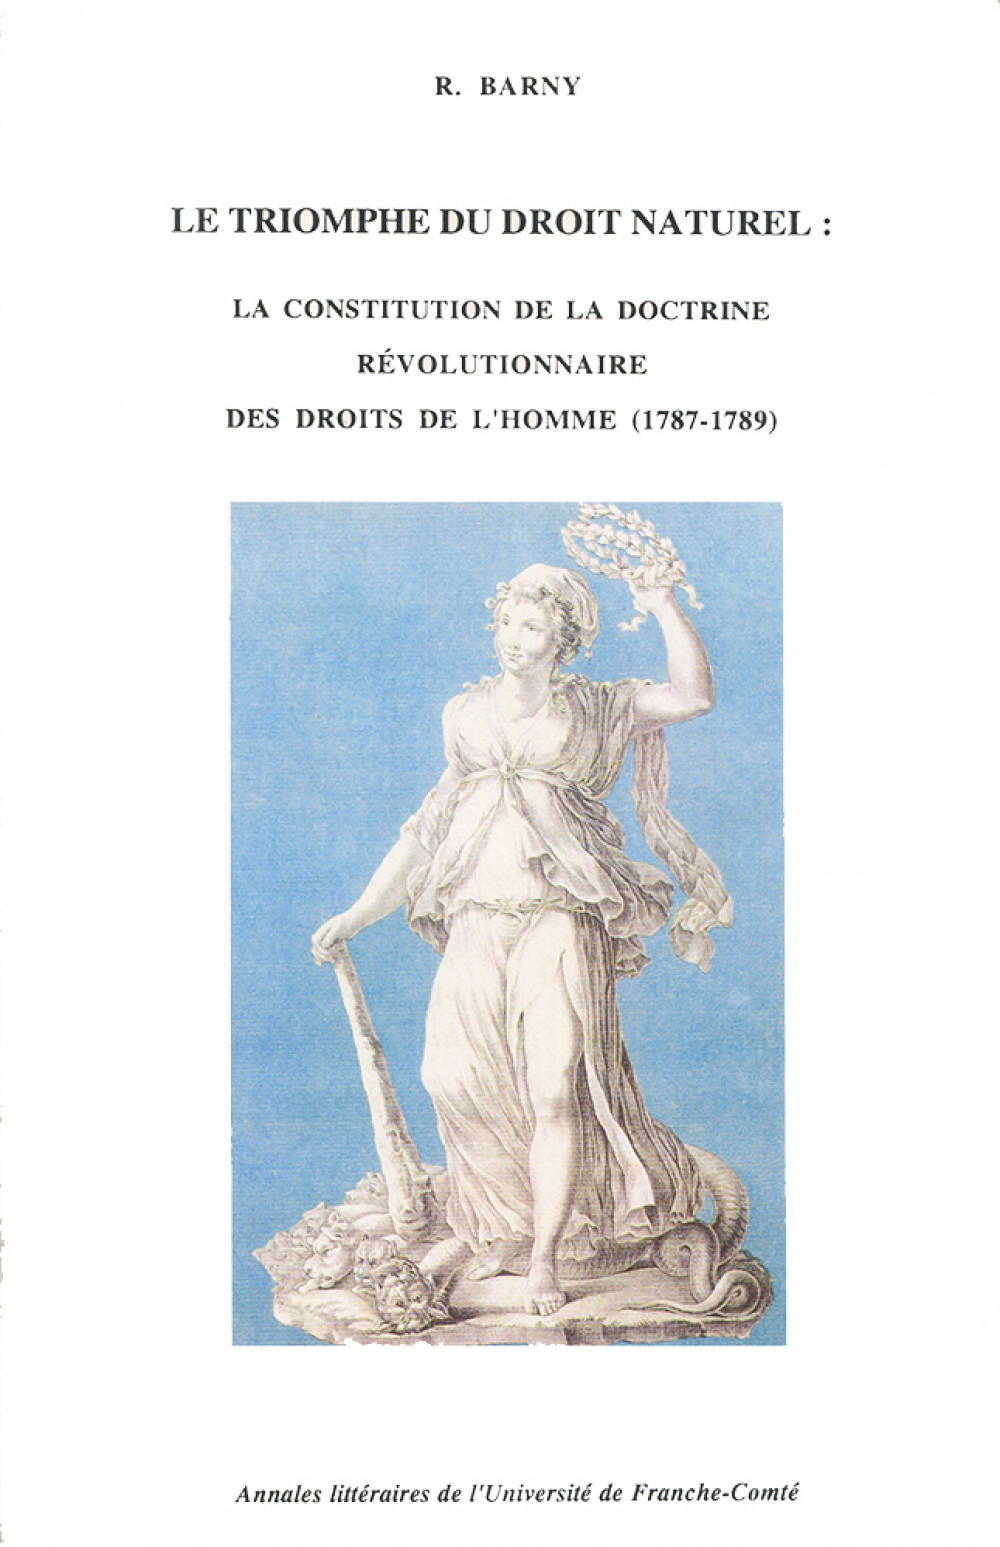 Le triomphe du droit naturel : La constitution de la doctrine révolutionnaire des droits de l'homme (1787-1789)